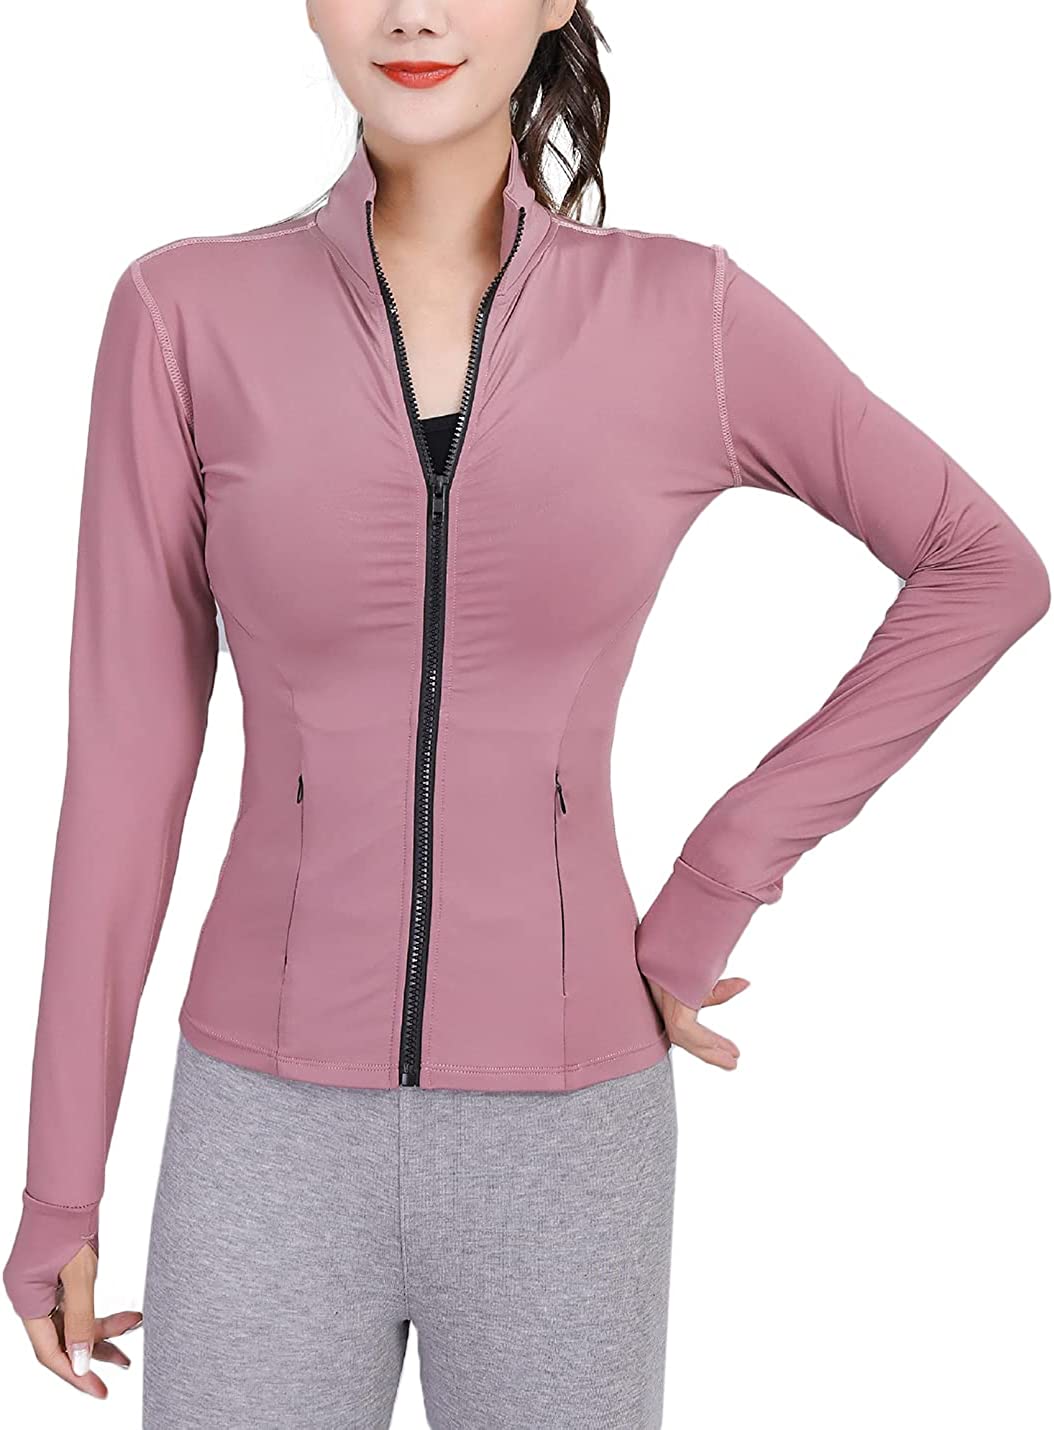 COWOKA Women's Slim Fit Full Zip Sleeveless Running Track Jacket